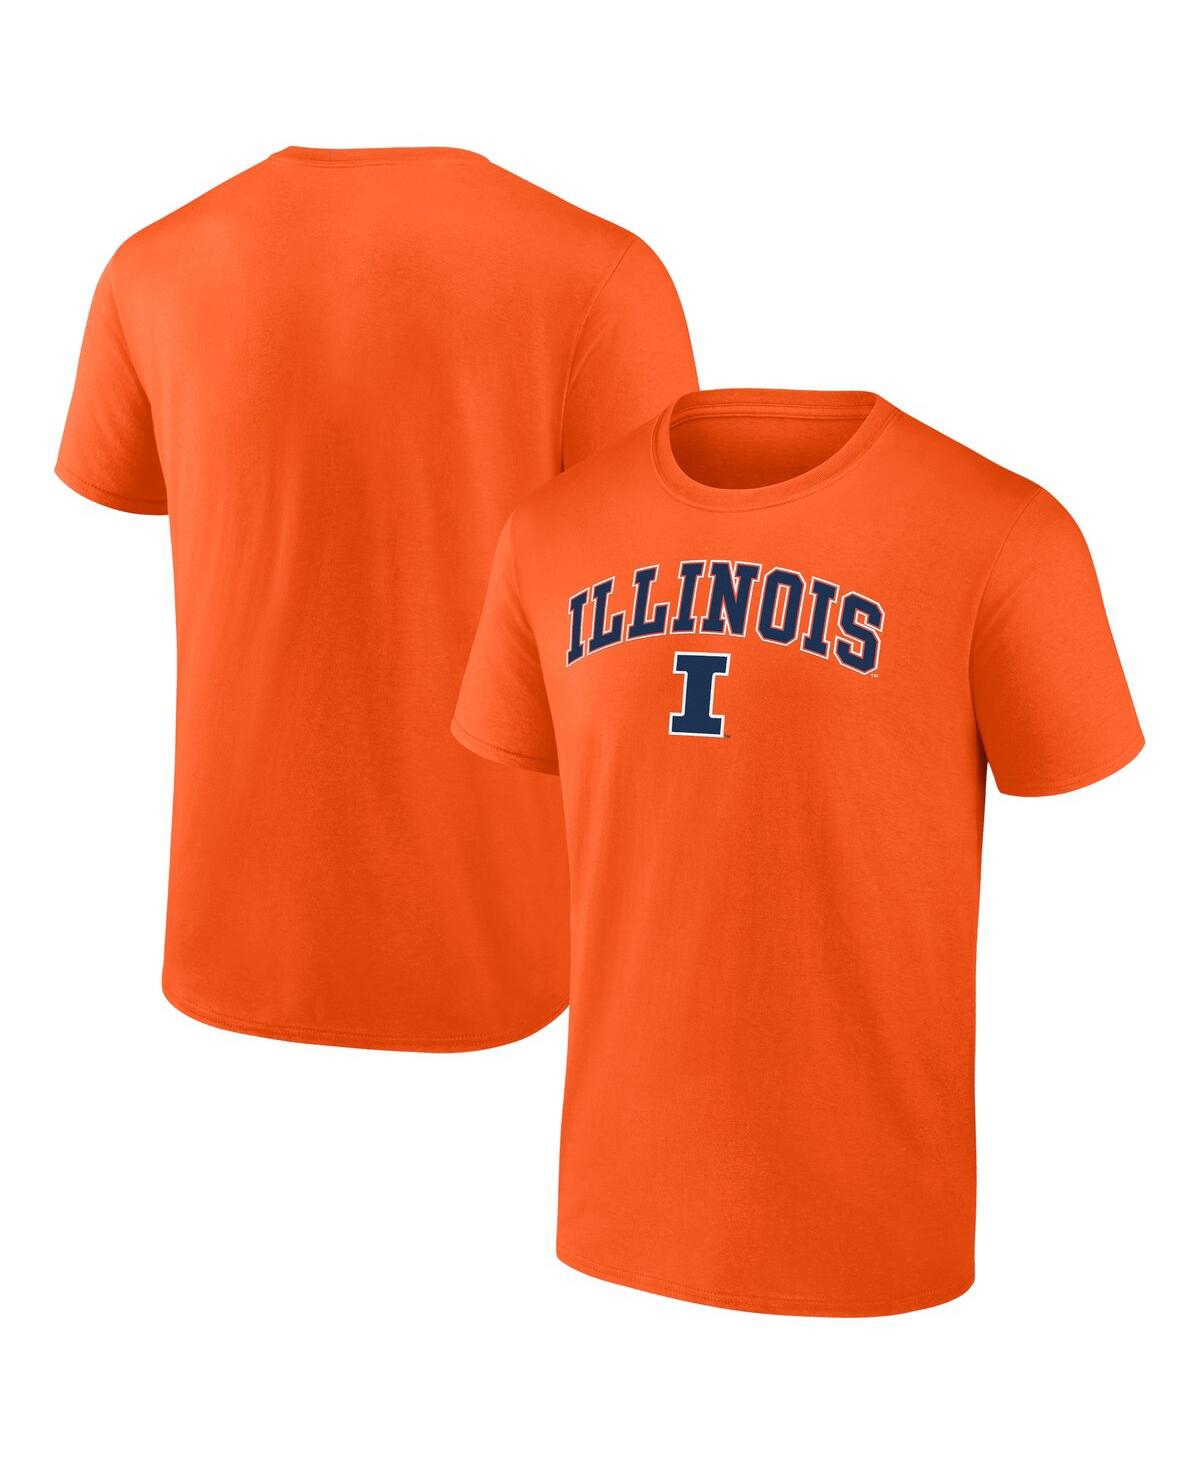 Fanatics Men's  Orange Illinois Fighting Illini Campus T-shirt